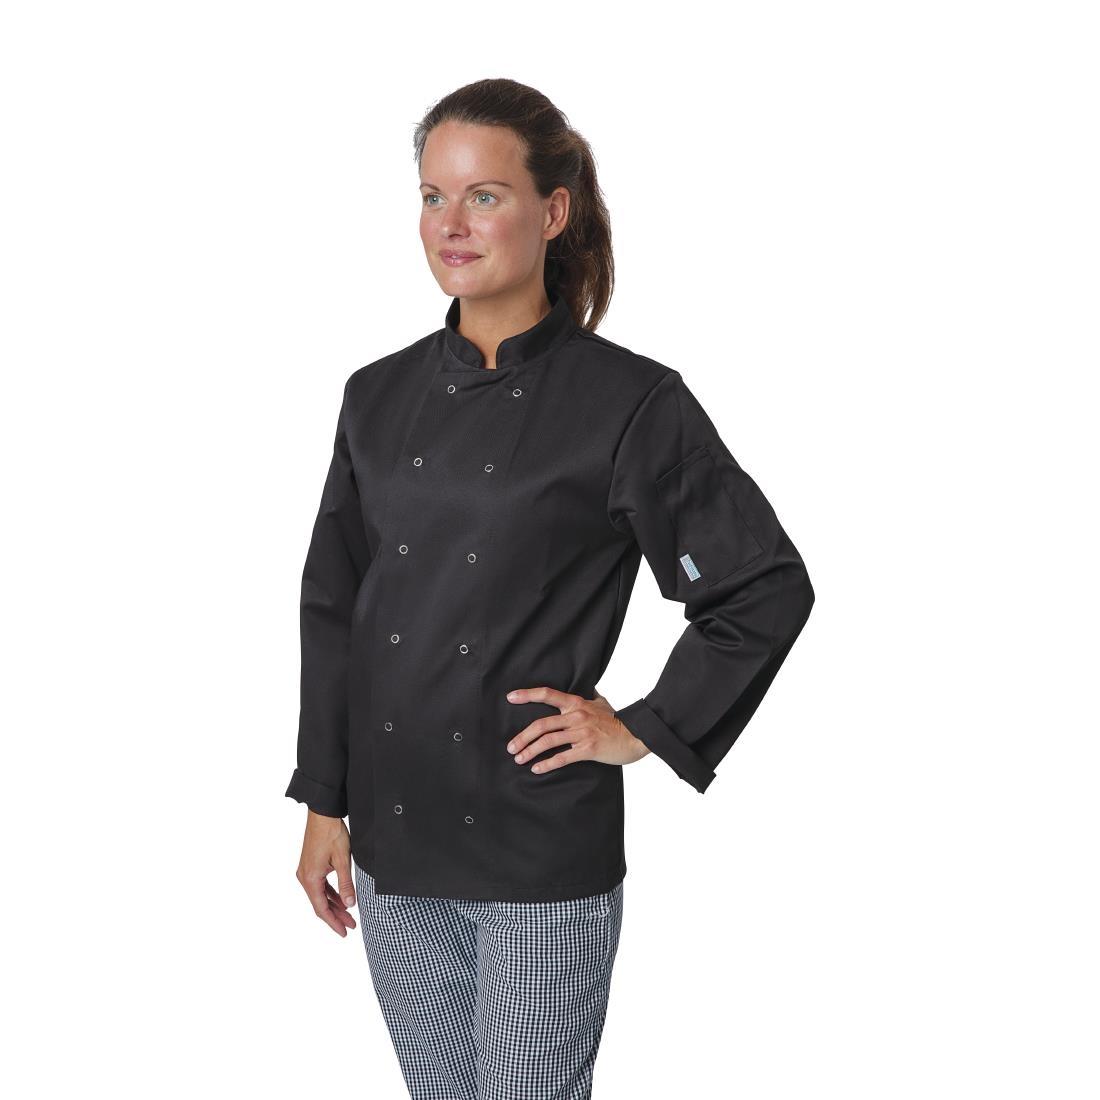 Whites Vegas Unisex Chefs Jacket Long Sleeve Black M - A438-M  - 2